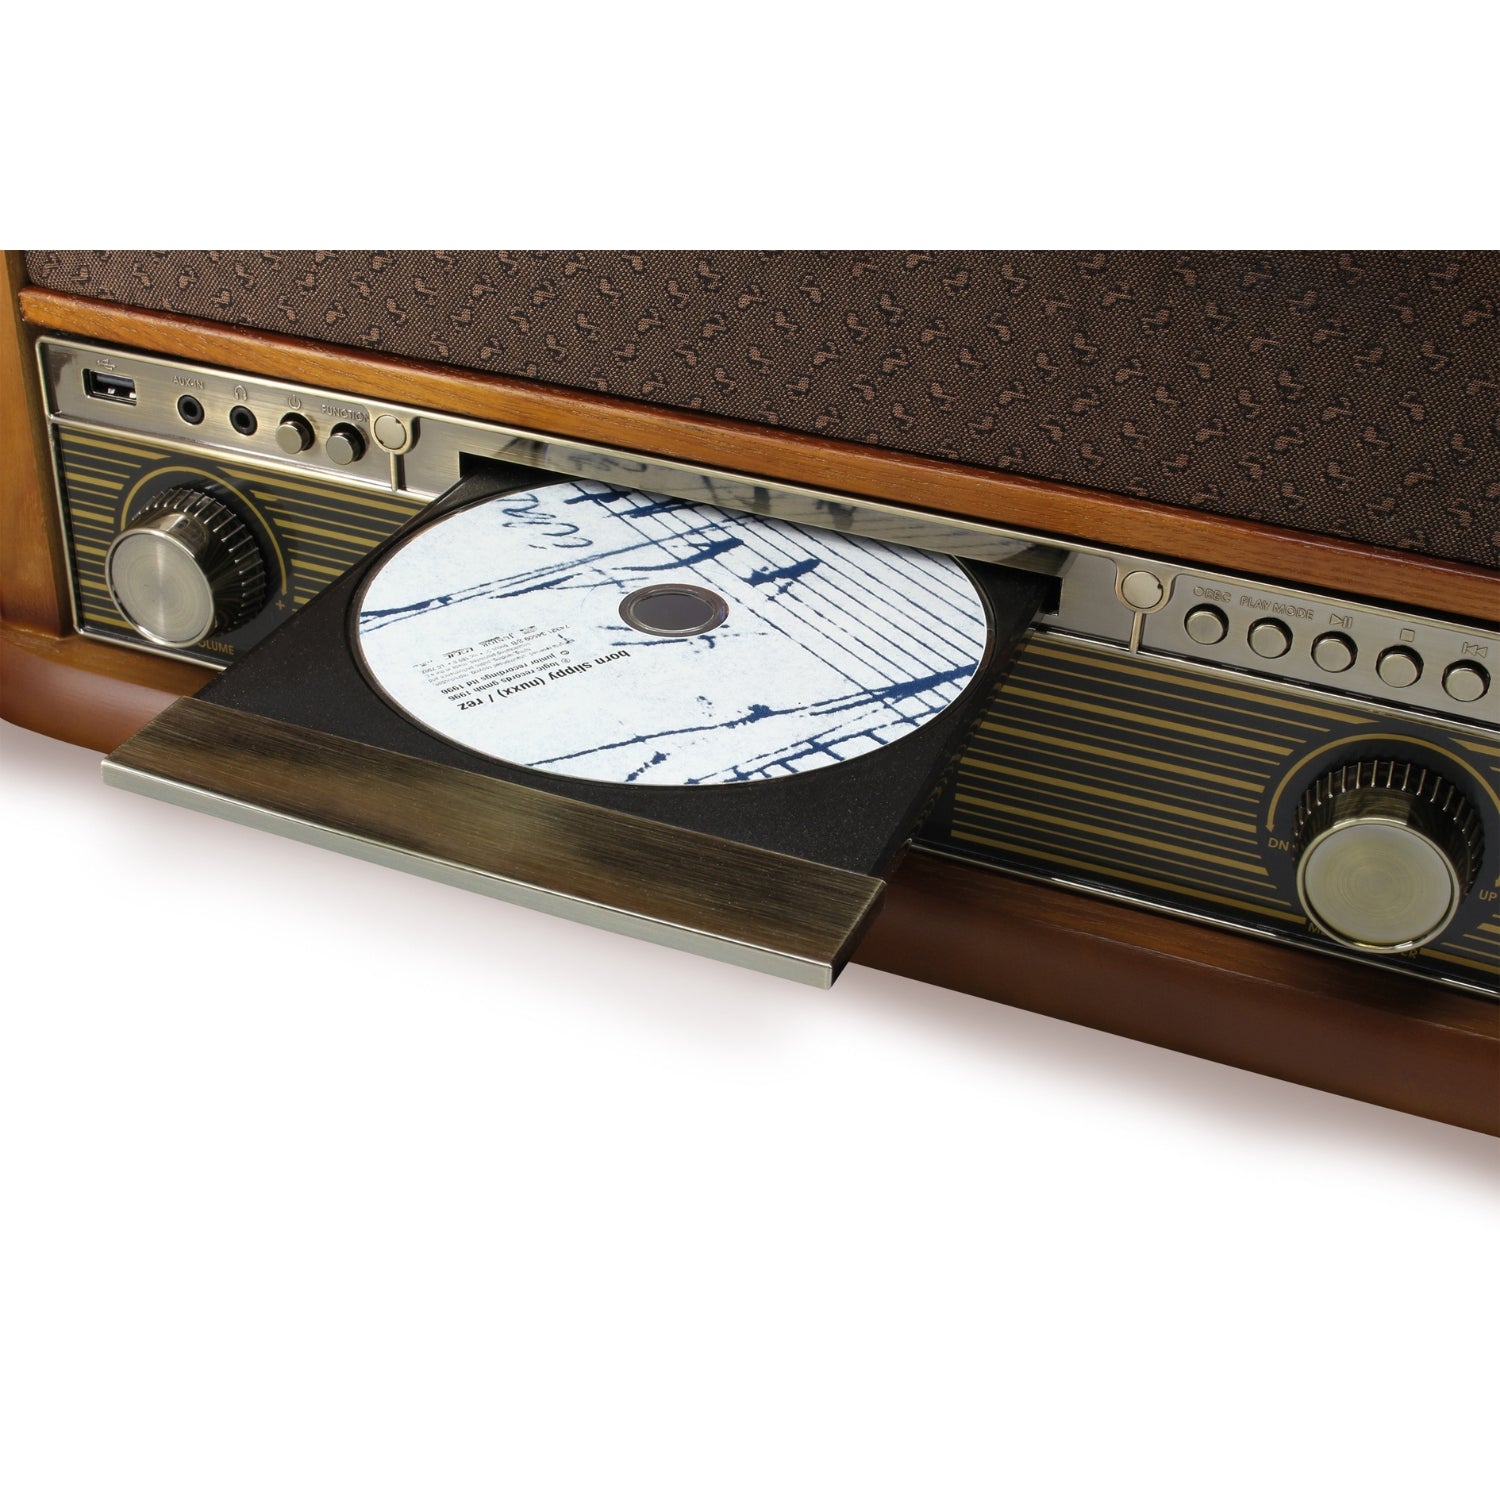 Soundmaster NR560 Nostalgie Stereoanlage Kompaktanlage Plattenspieler CD-Player MP3 USB Encoding Kassettenspieler 75-Ohm Anschluss